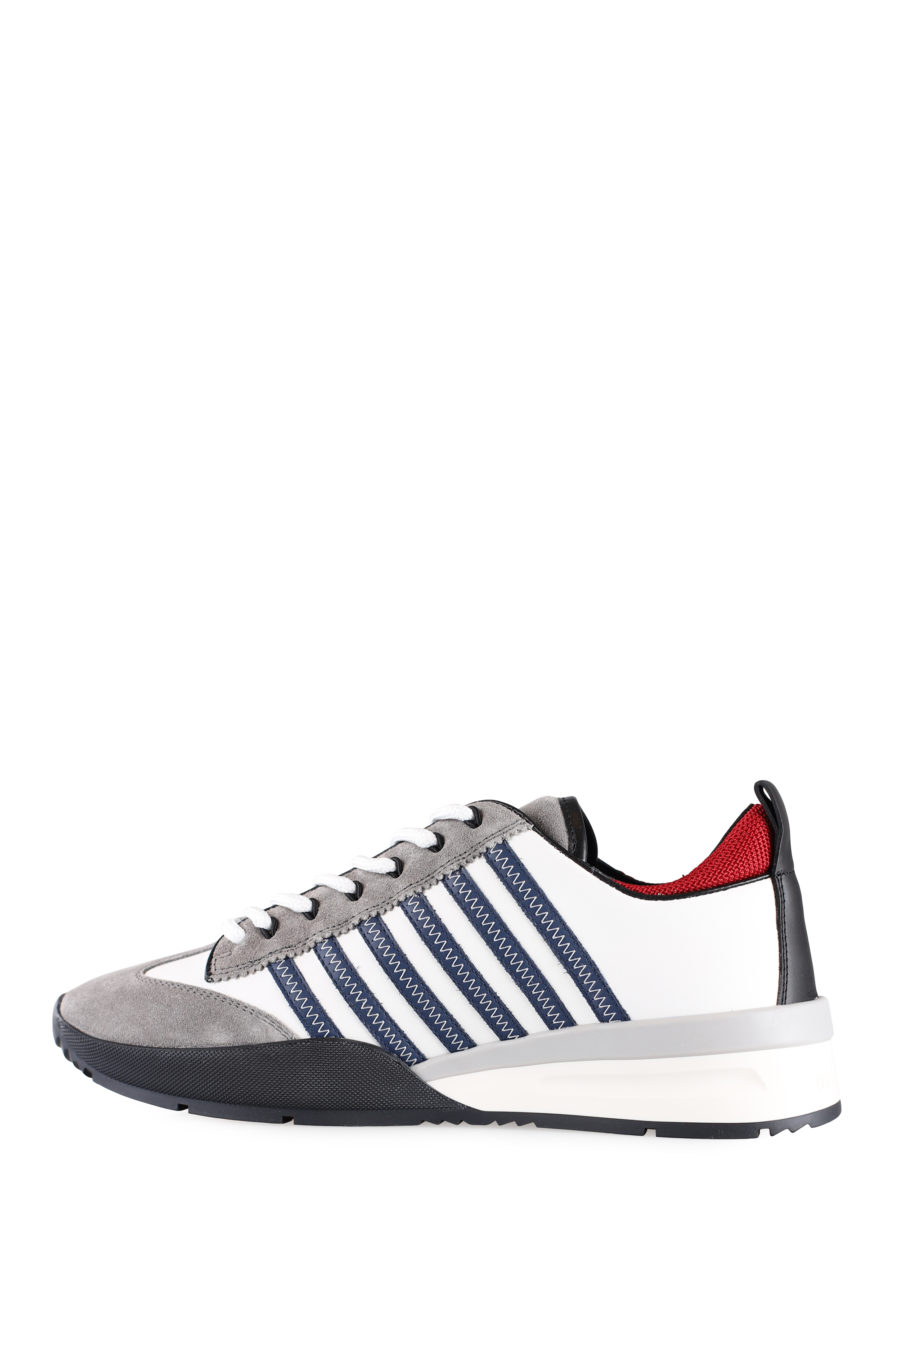 Zapatillas blancas y grises con líneas azules y detalle en rojo - IMG 0012